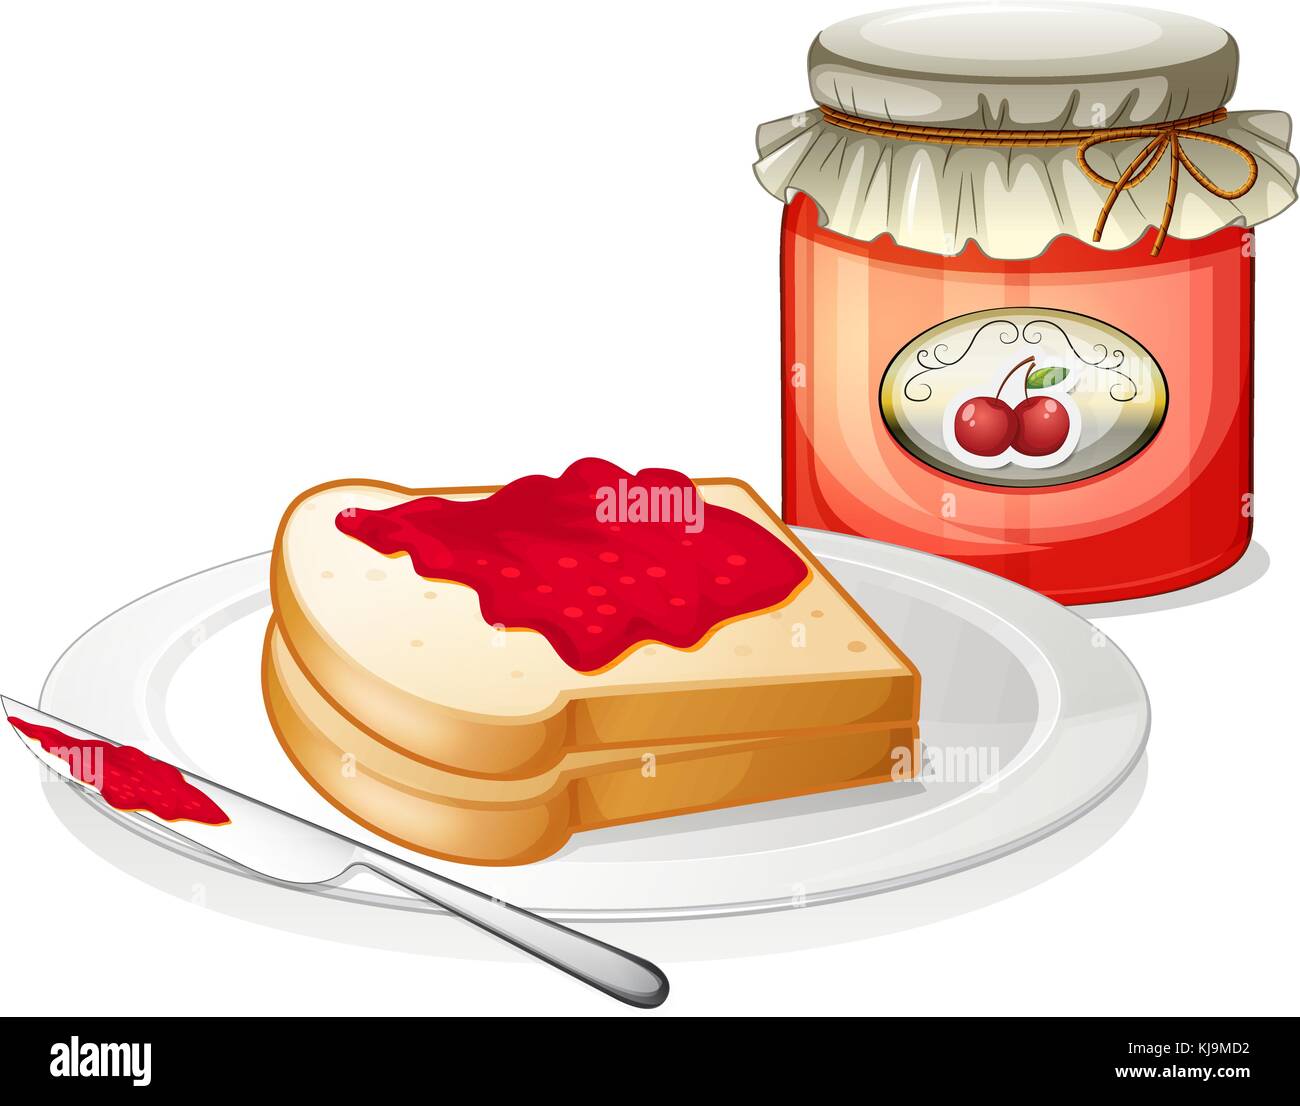 Illustrazione di un sandwich all'interno della piastra con una confettura di ciliegie su sfondo bianco Illustrazione Vettoriale